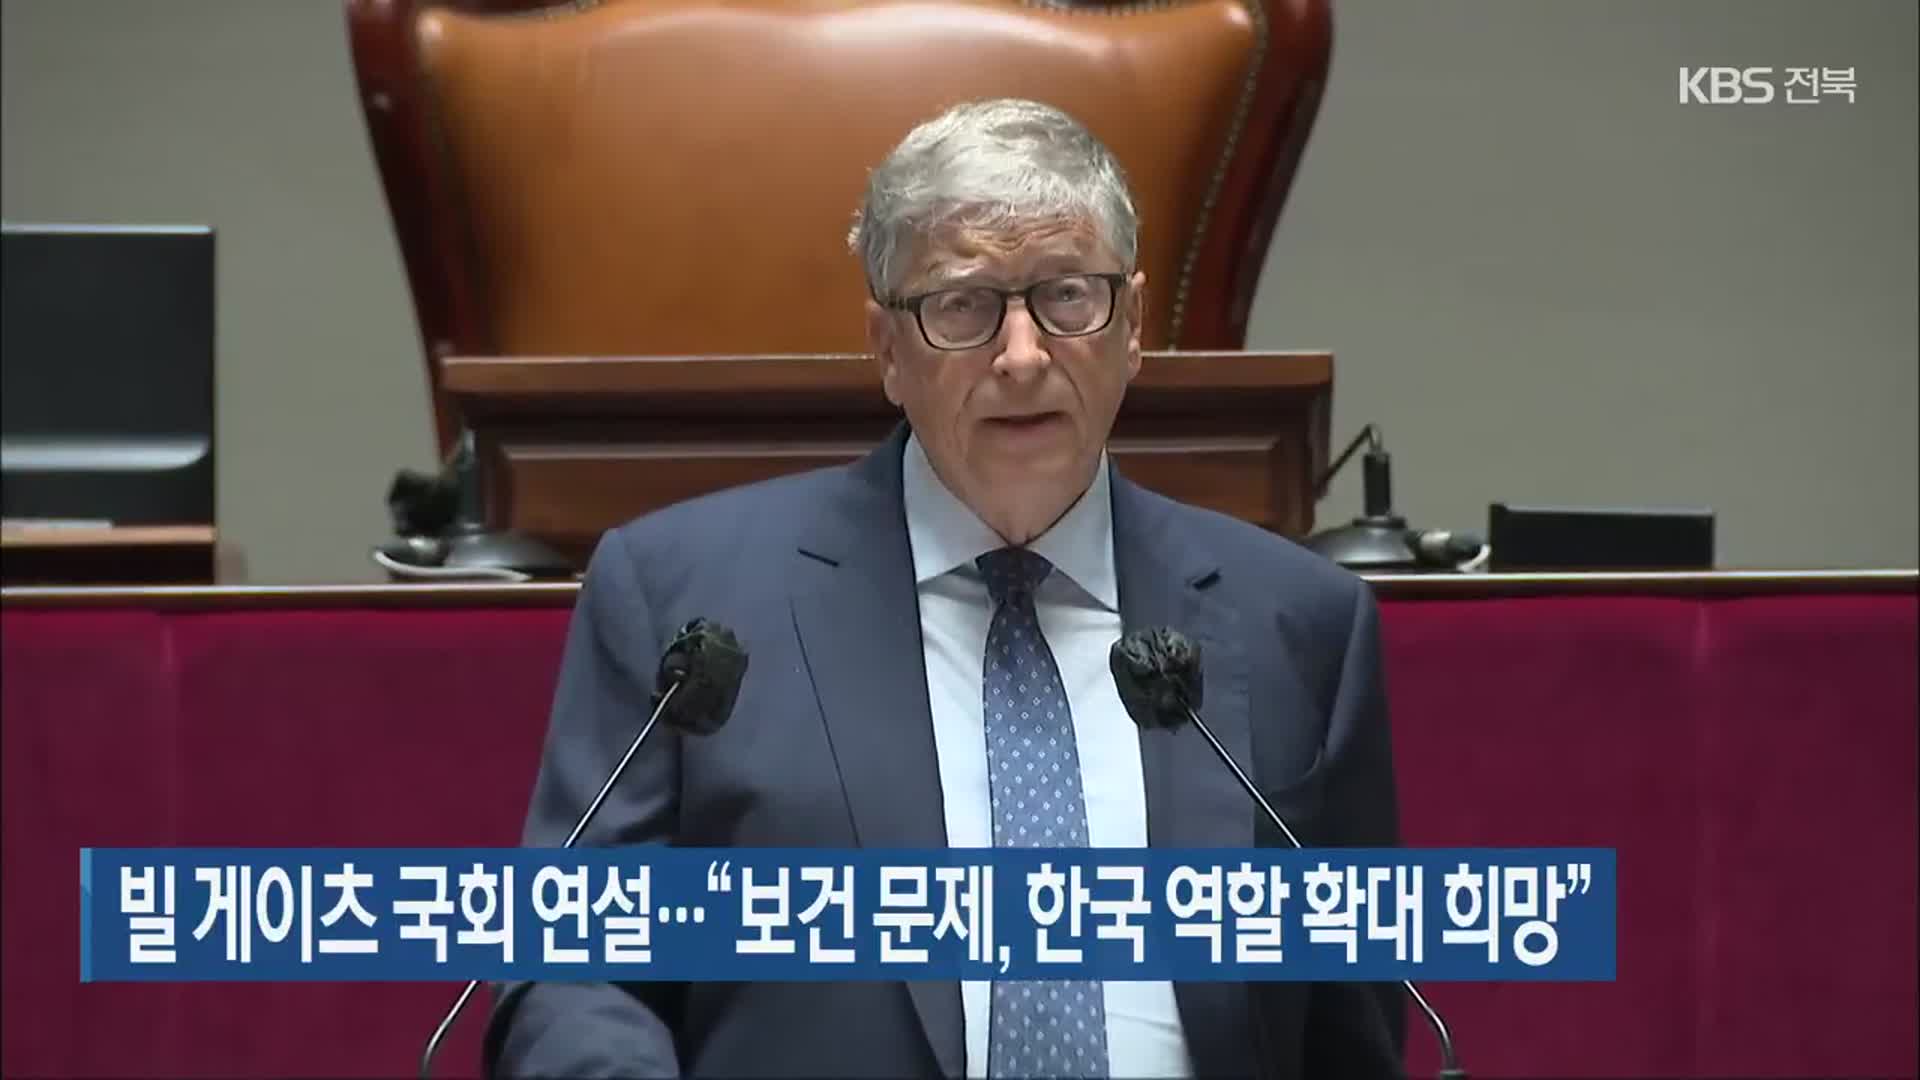 빌 게이츠 국회 연설…“보건 문제, 한국 역할 확대 희망”